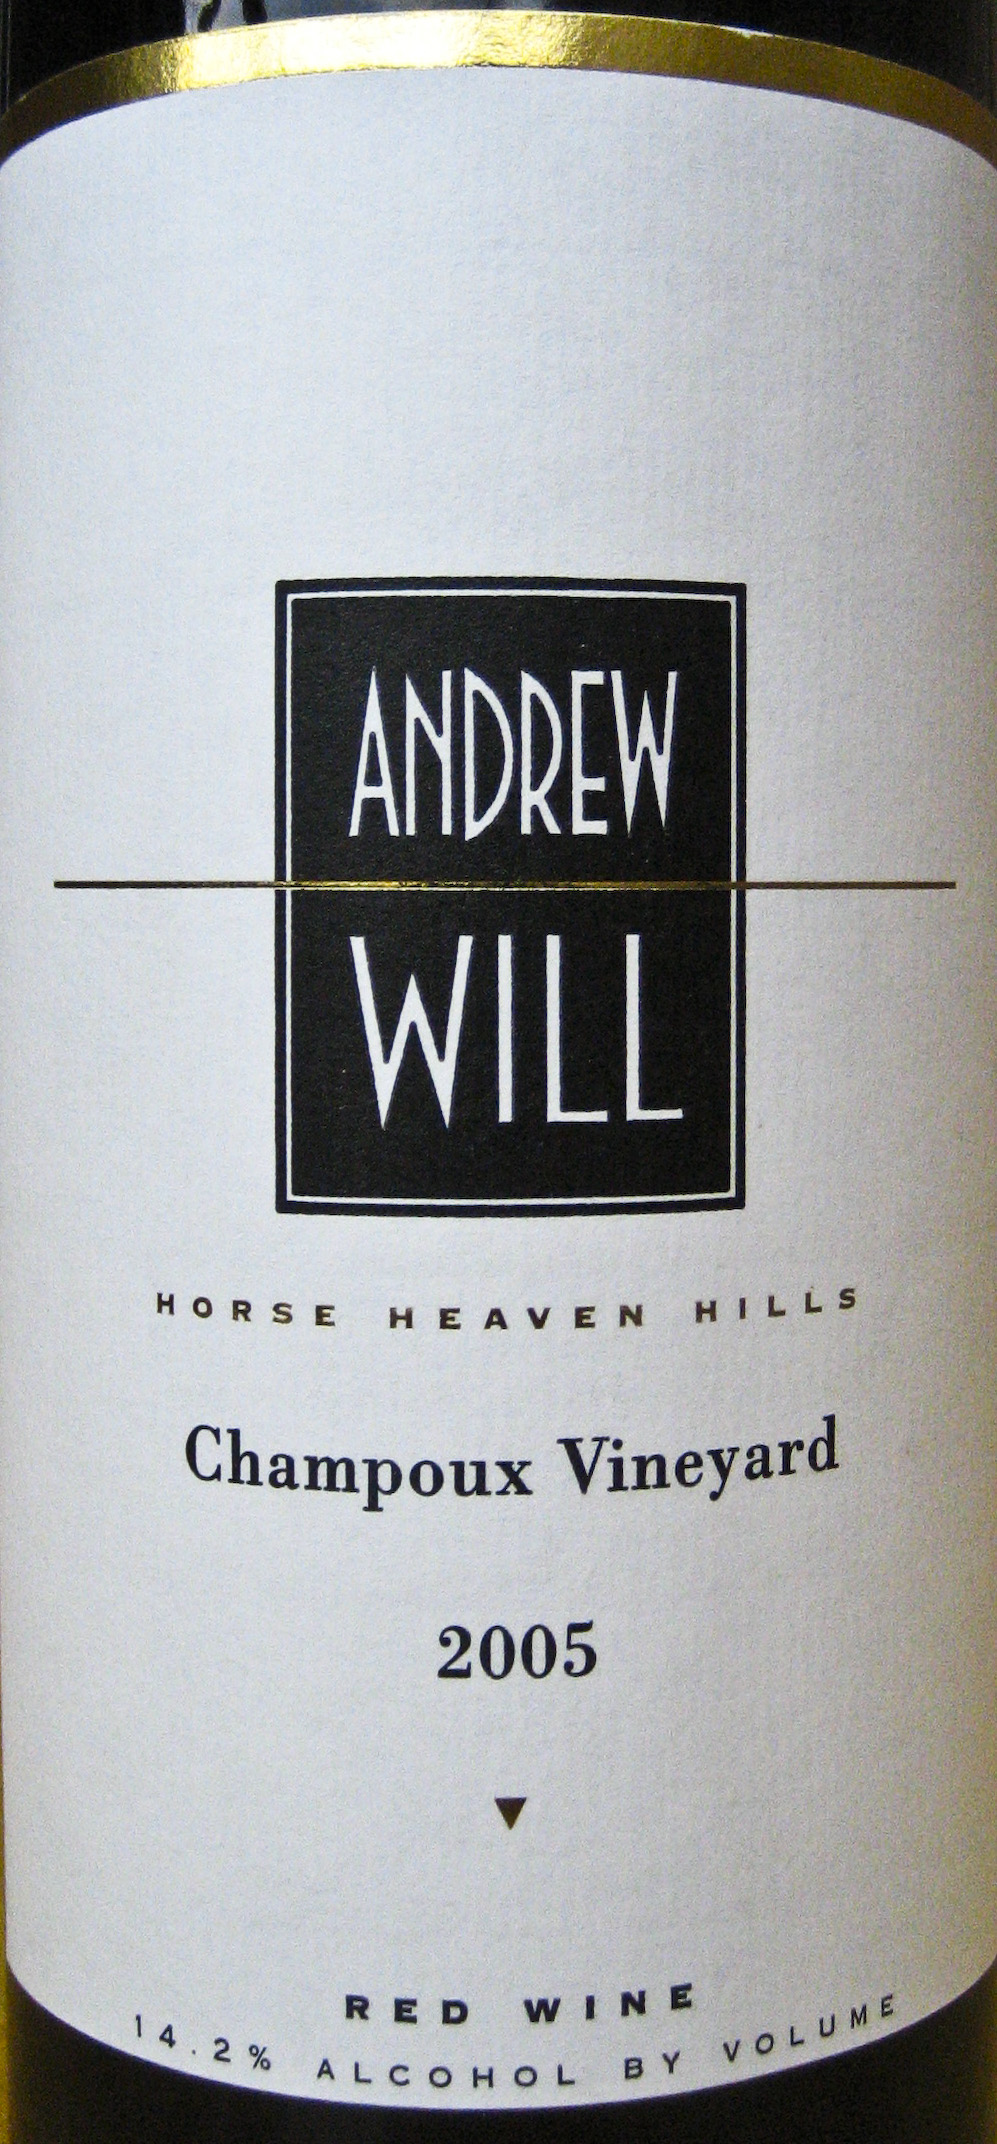 Andrew will vineyard